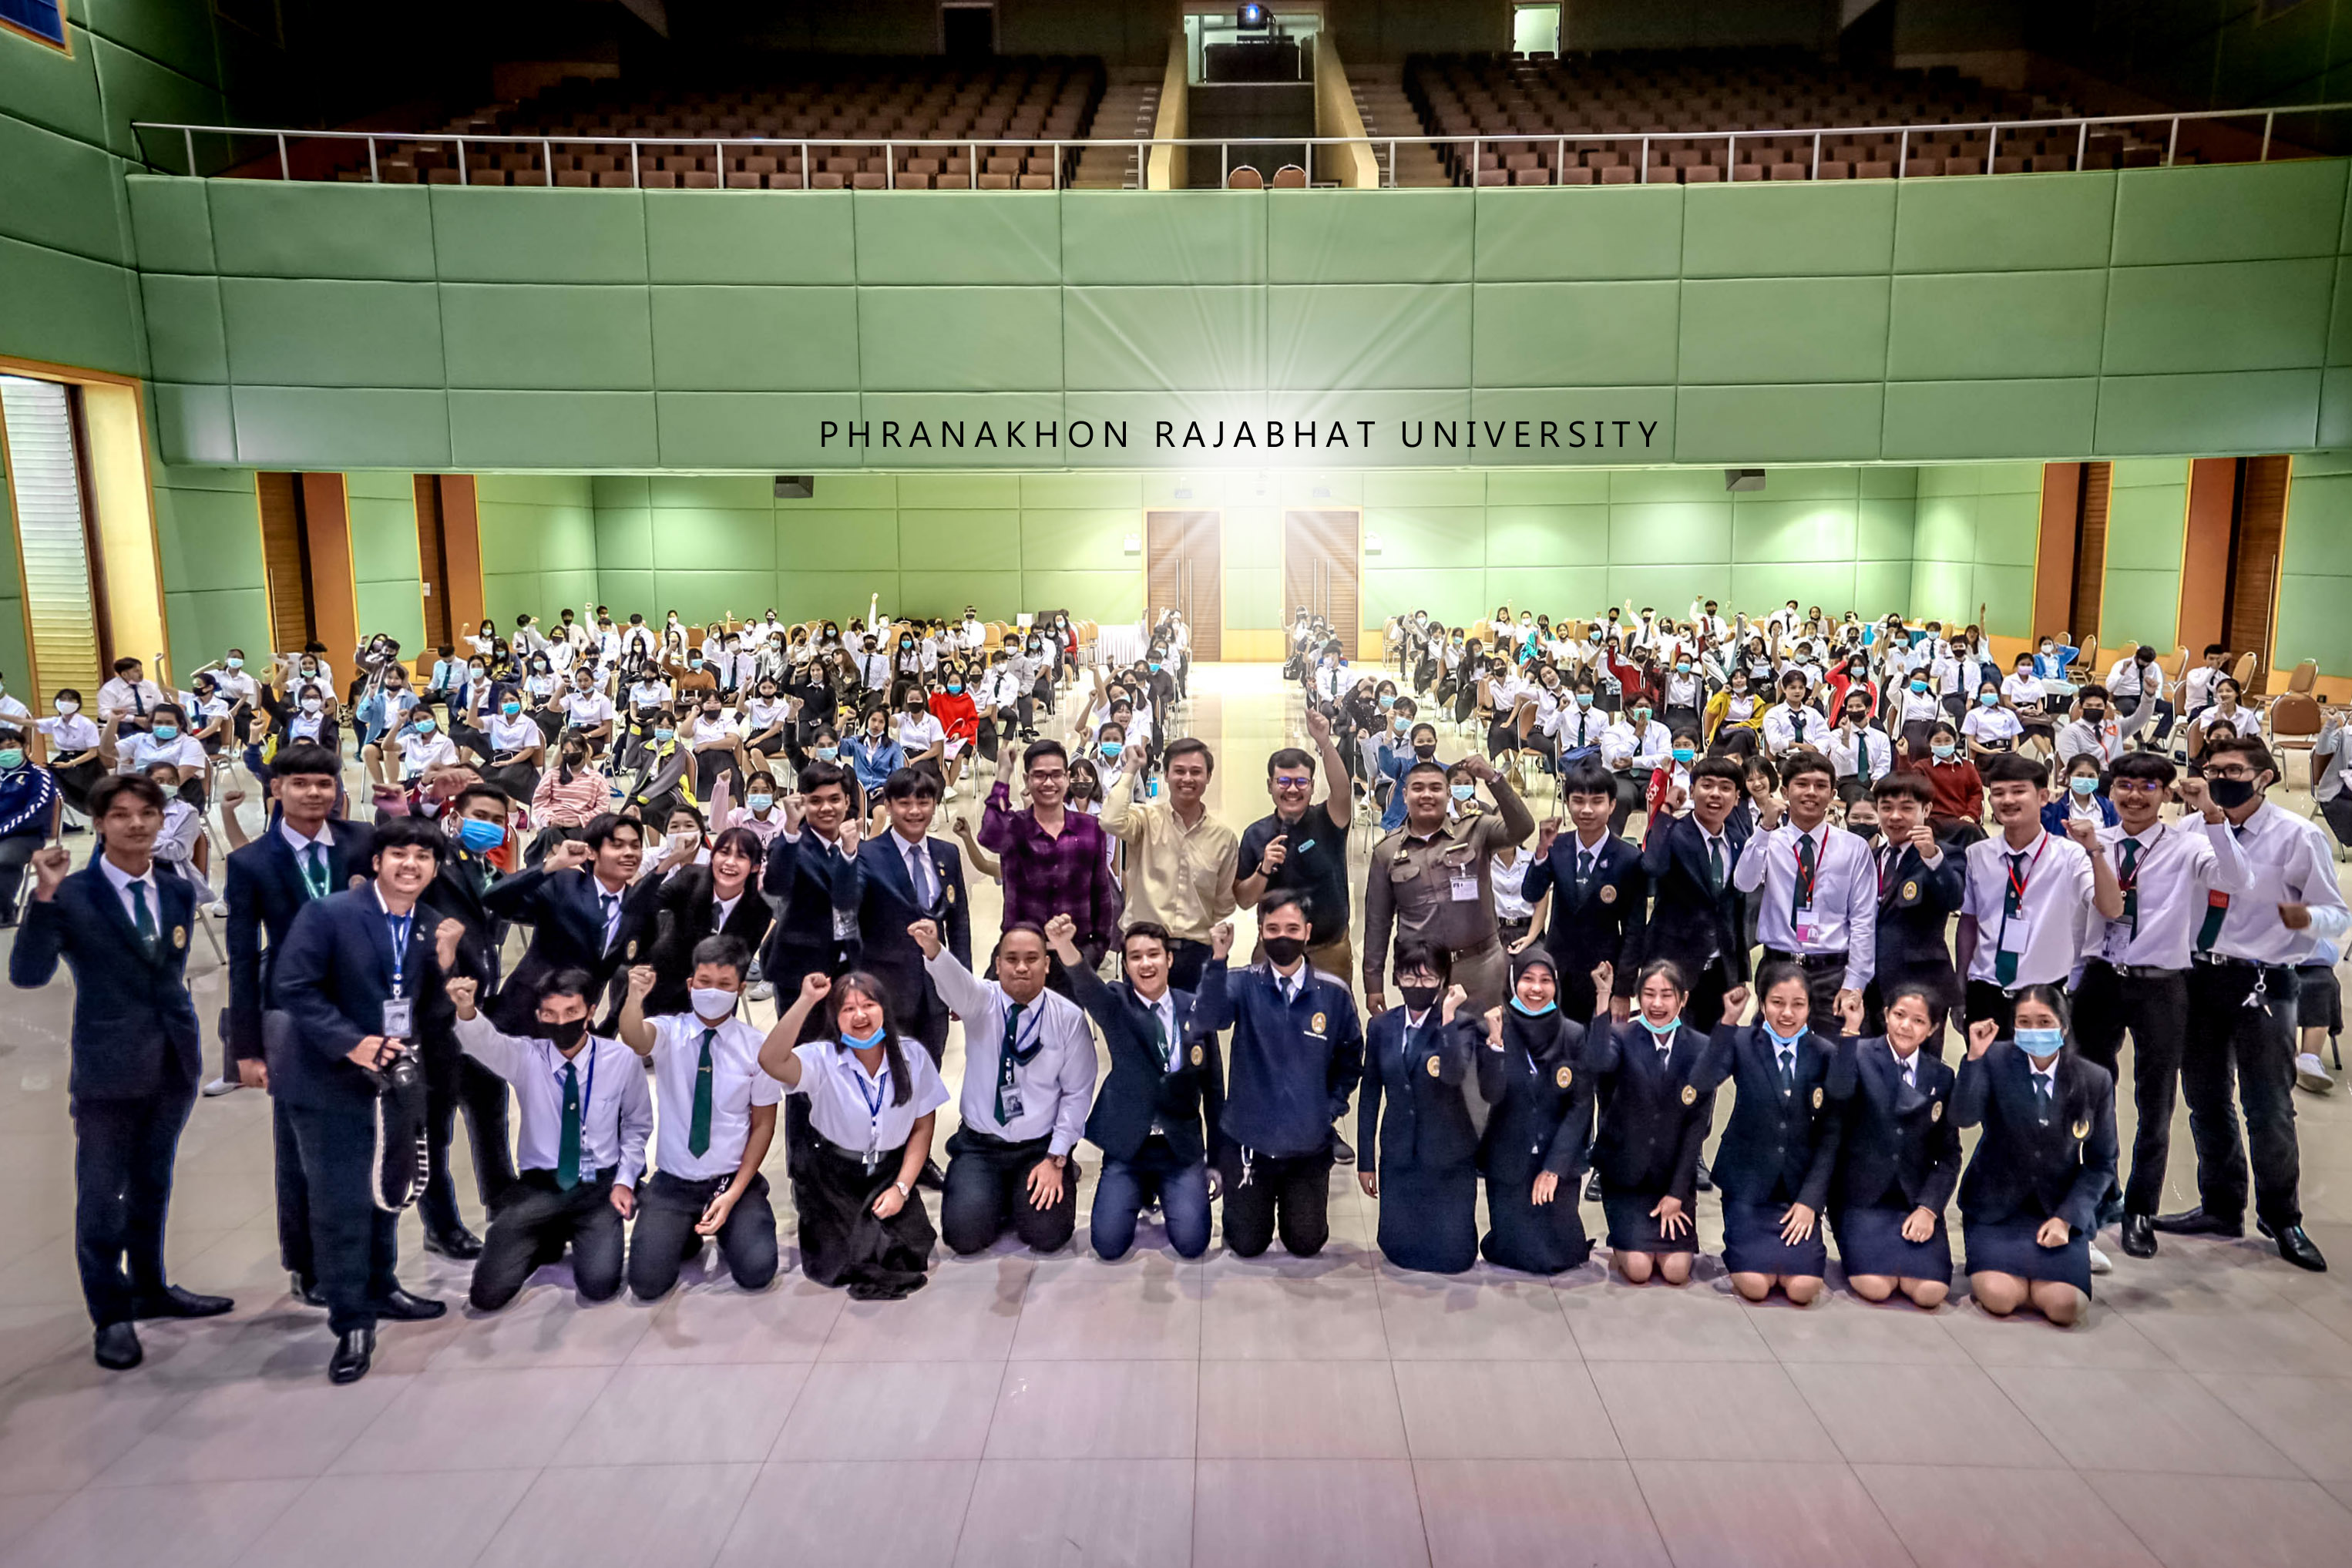 9 กันยายน 2563 กองพัฒนานักศึกษา มหาวิทยาลัยราชภัฏพระนคร จัดให้มีการจัดกิจกรรมเพาะกล้ากาซะลอง 63 รุ่นที่ 9 ประจำปีการศึกษา 2563 ณ หอประชุมภัทรมหาราช